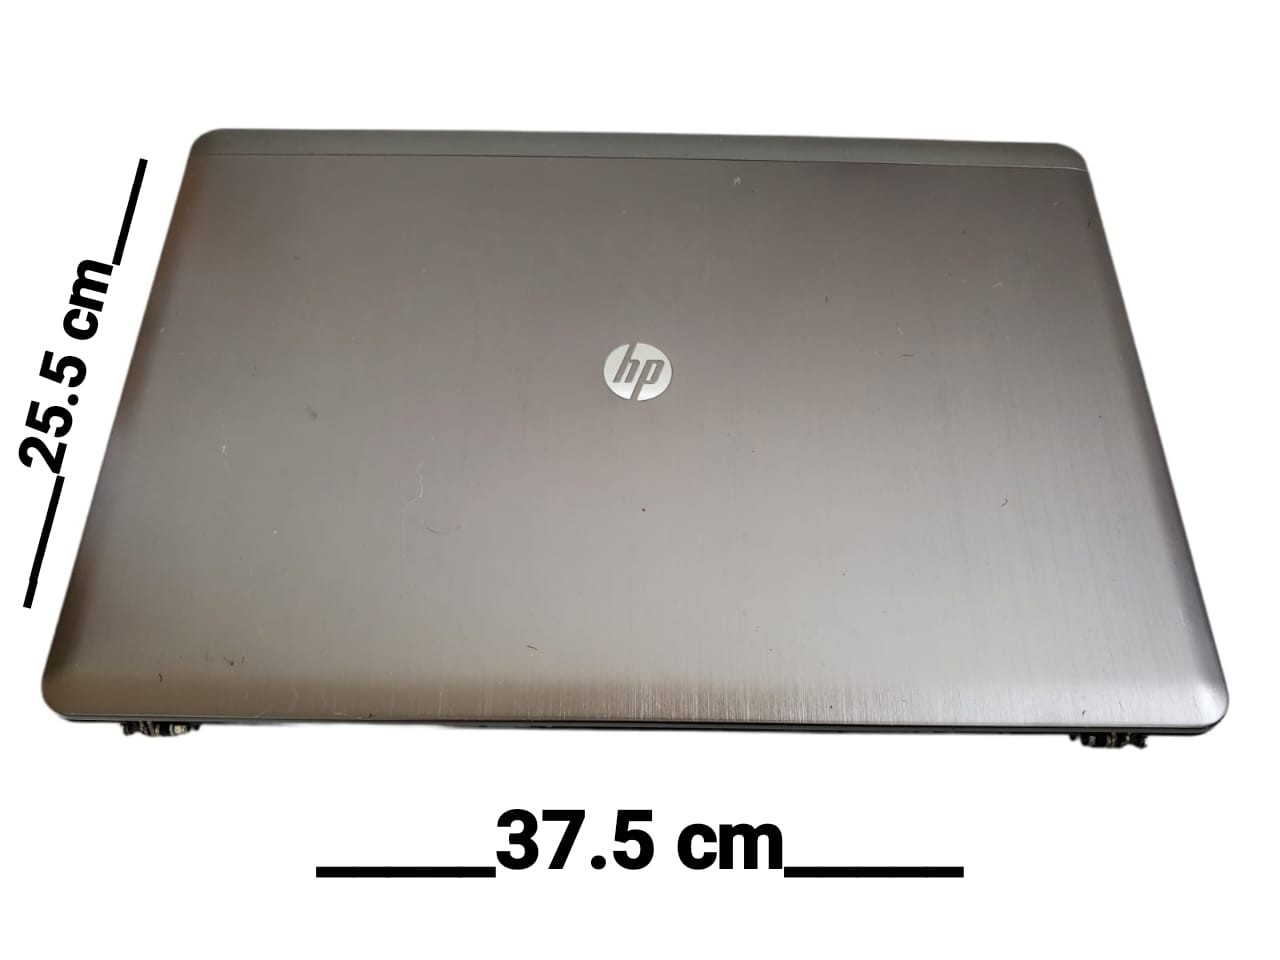 Top Cover, Tapa trasera, Bisel, Bisagras y Cables de conexión de Laptop 15.5" Hp Probook 4540s (Producto usado)